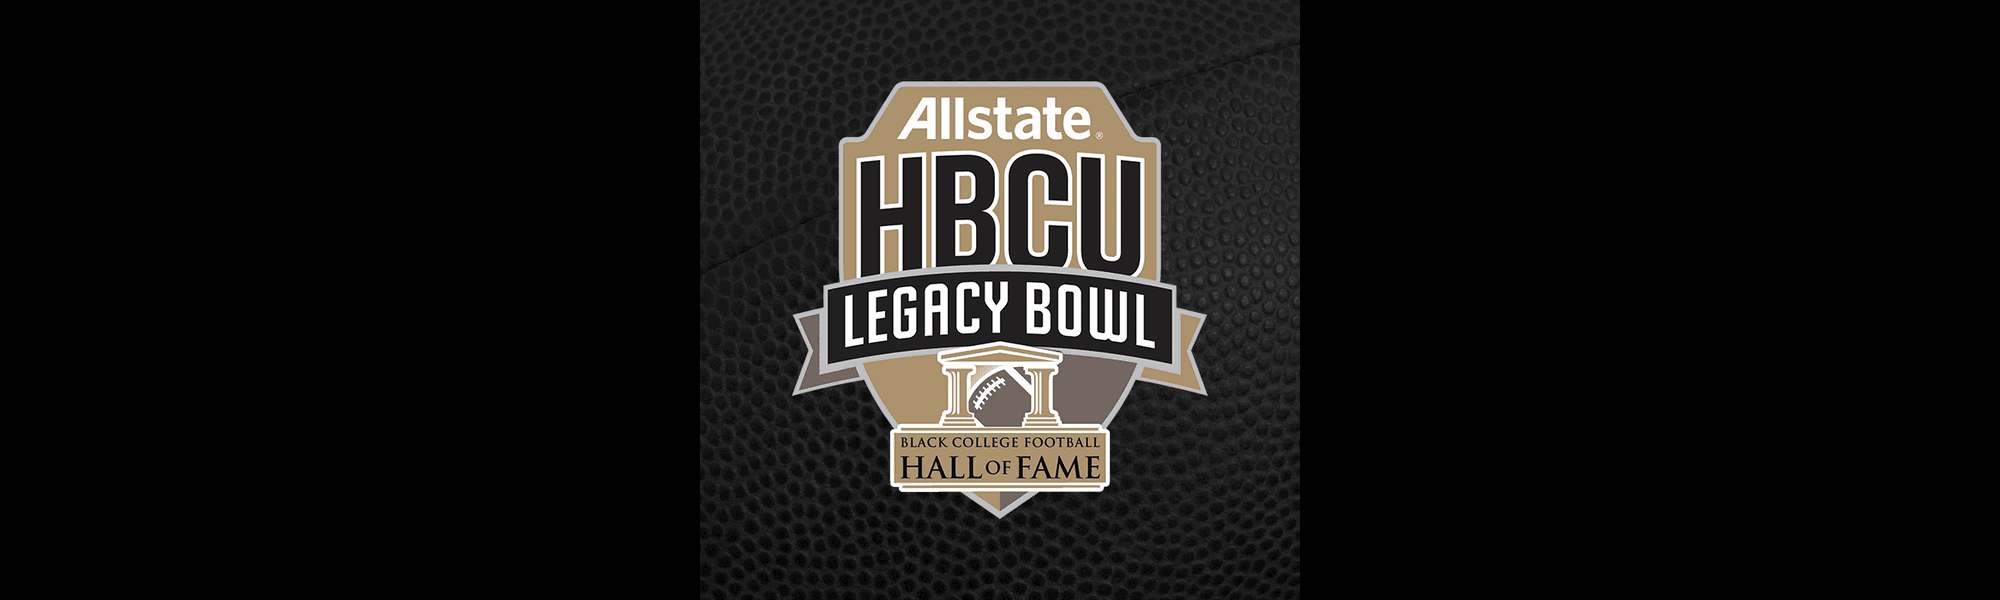 HBCU Legacy Bowl Announces Allstate as Title Partner